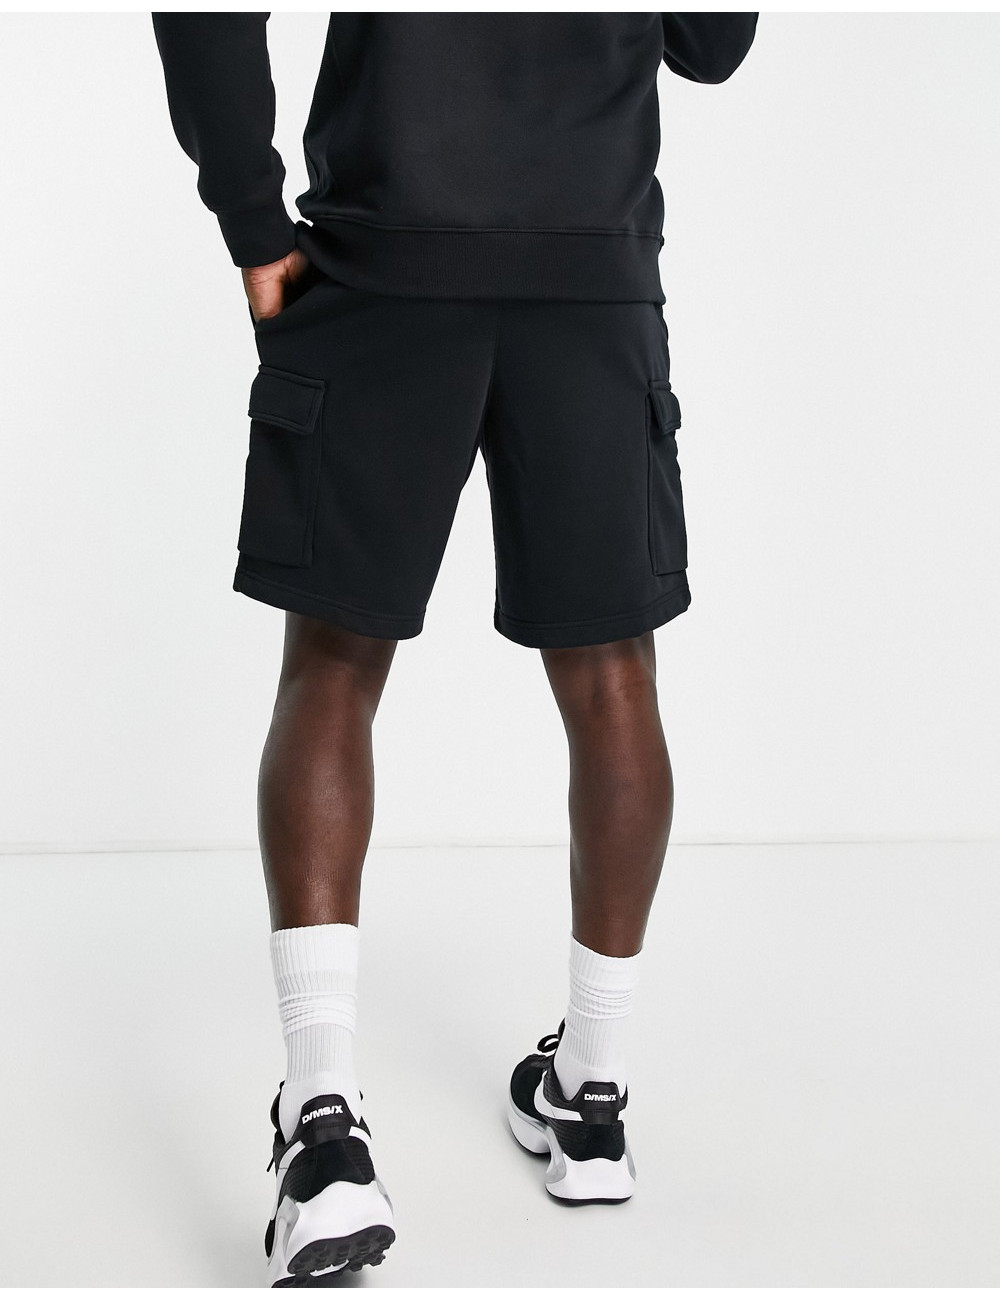 Nike Zig Zag logo fleece...